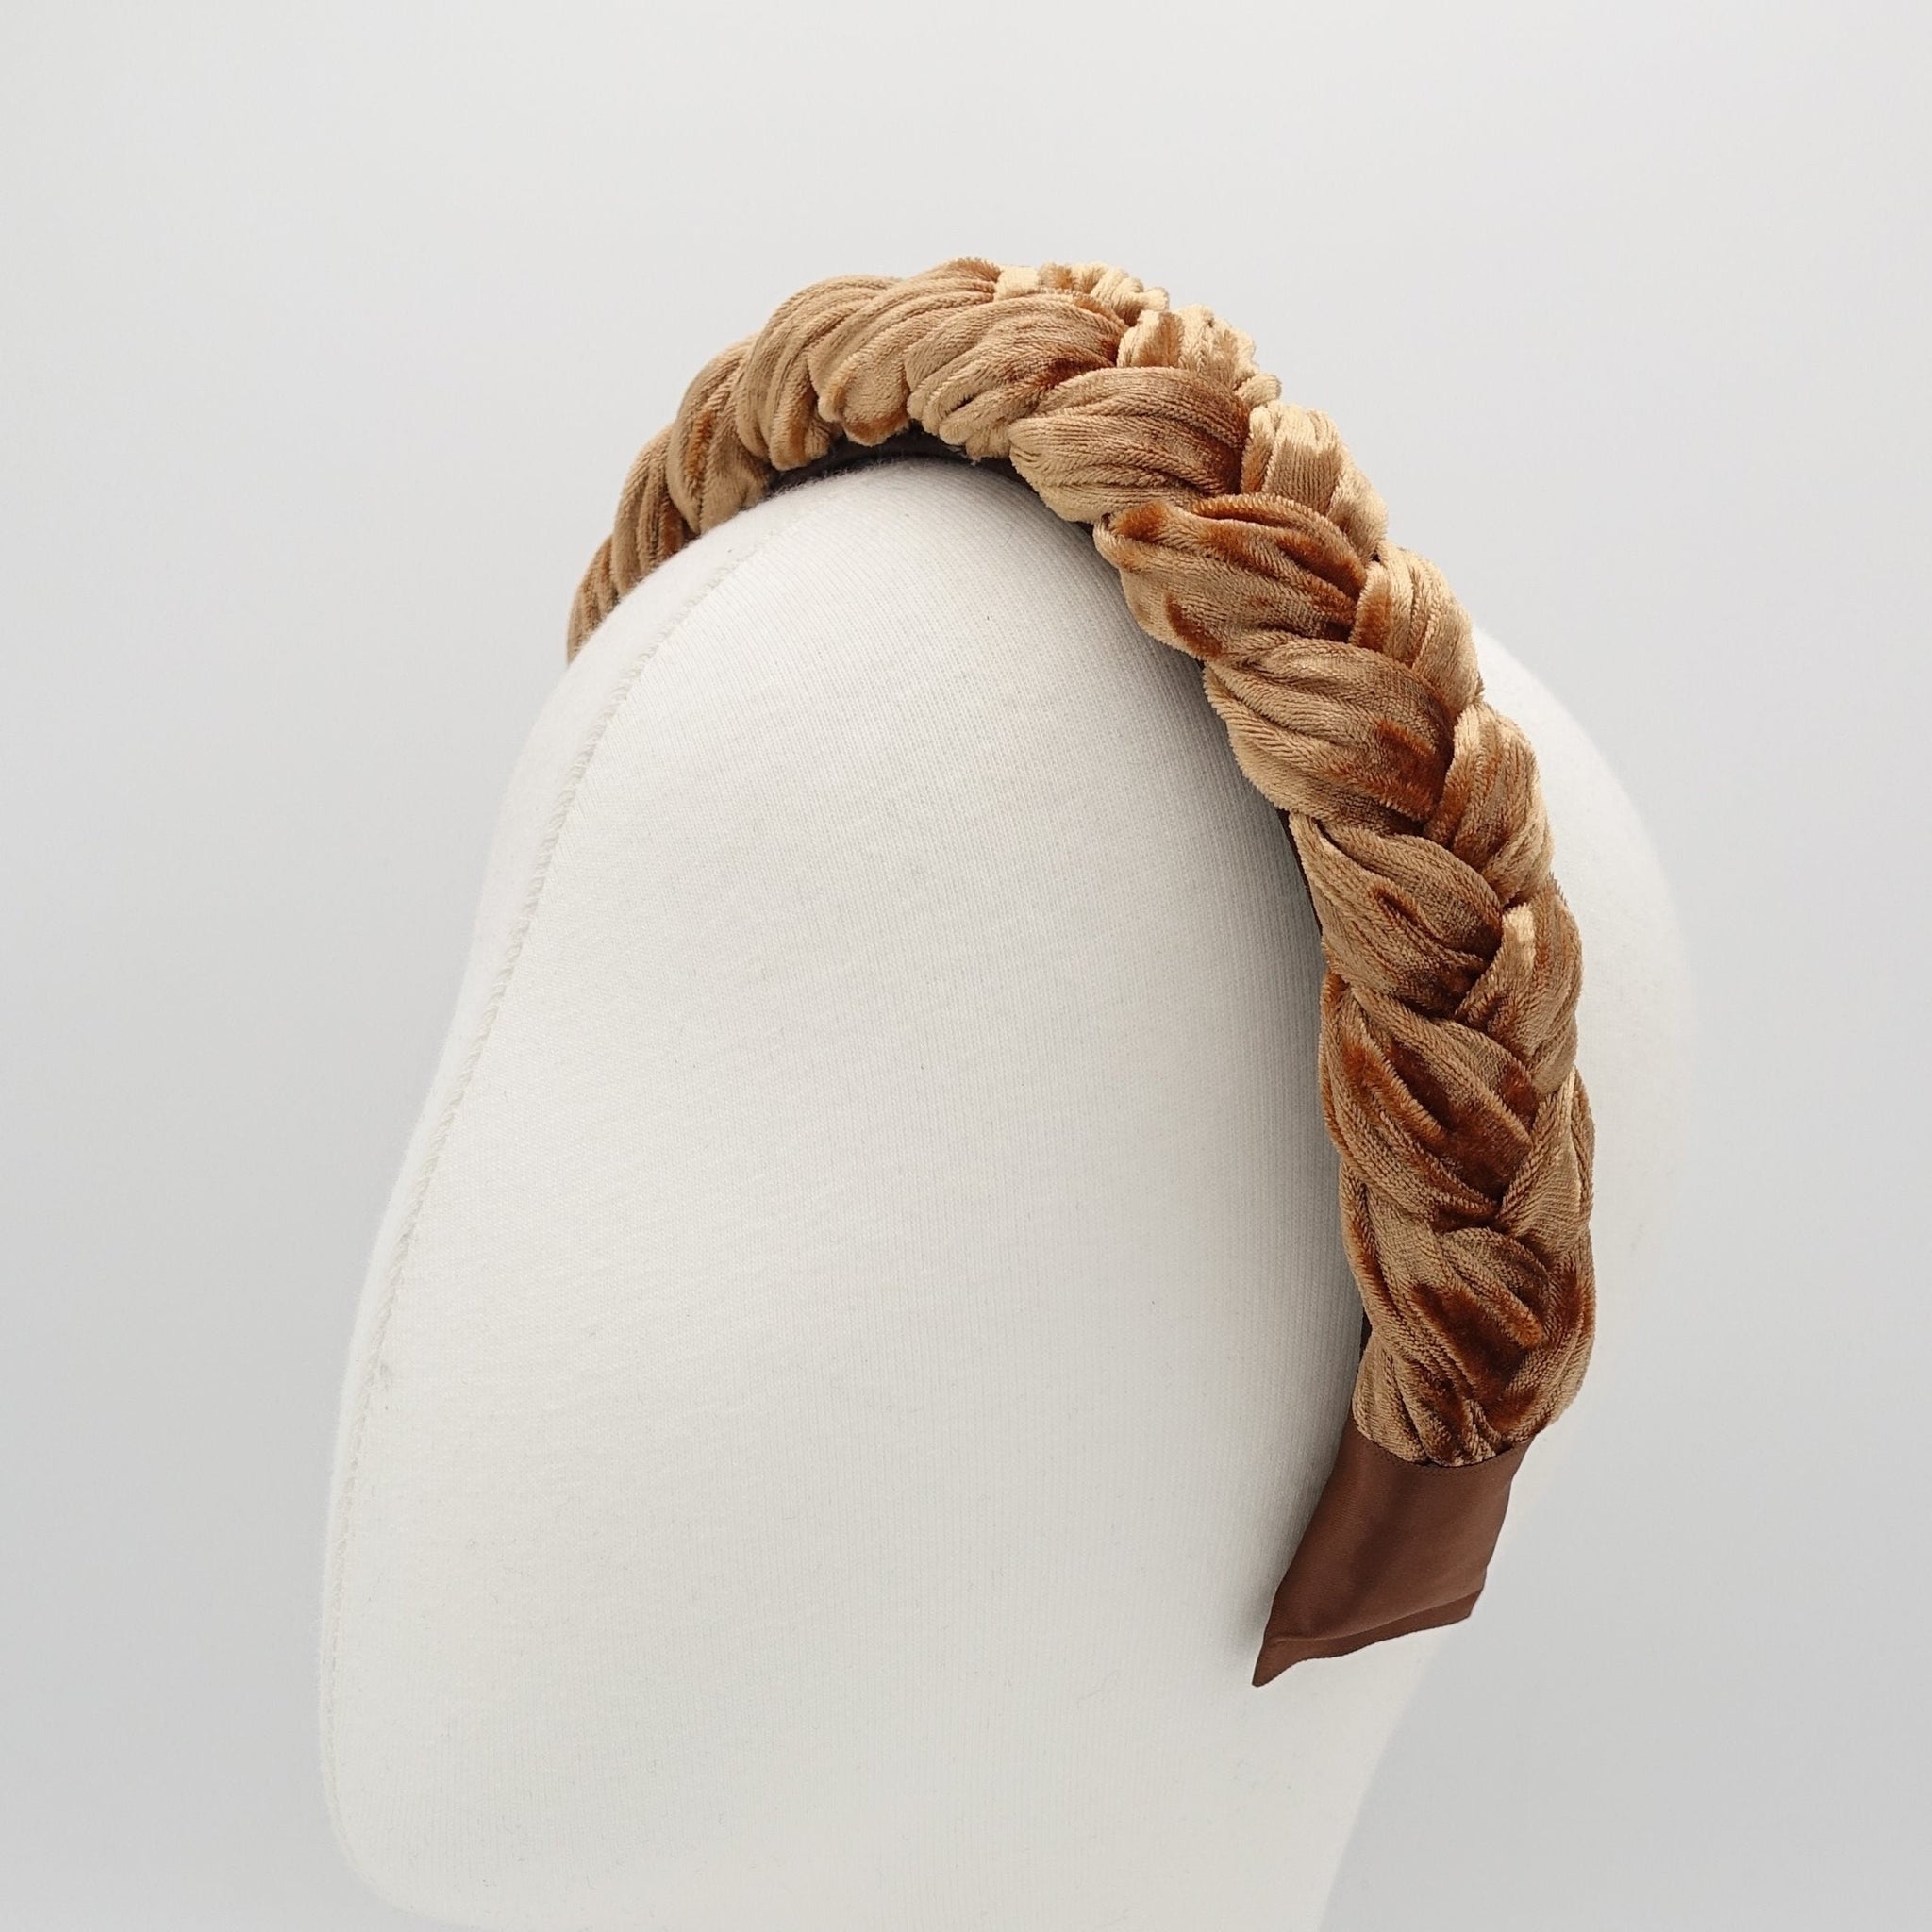 velvet braided headbands for women 